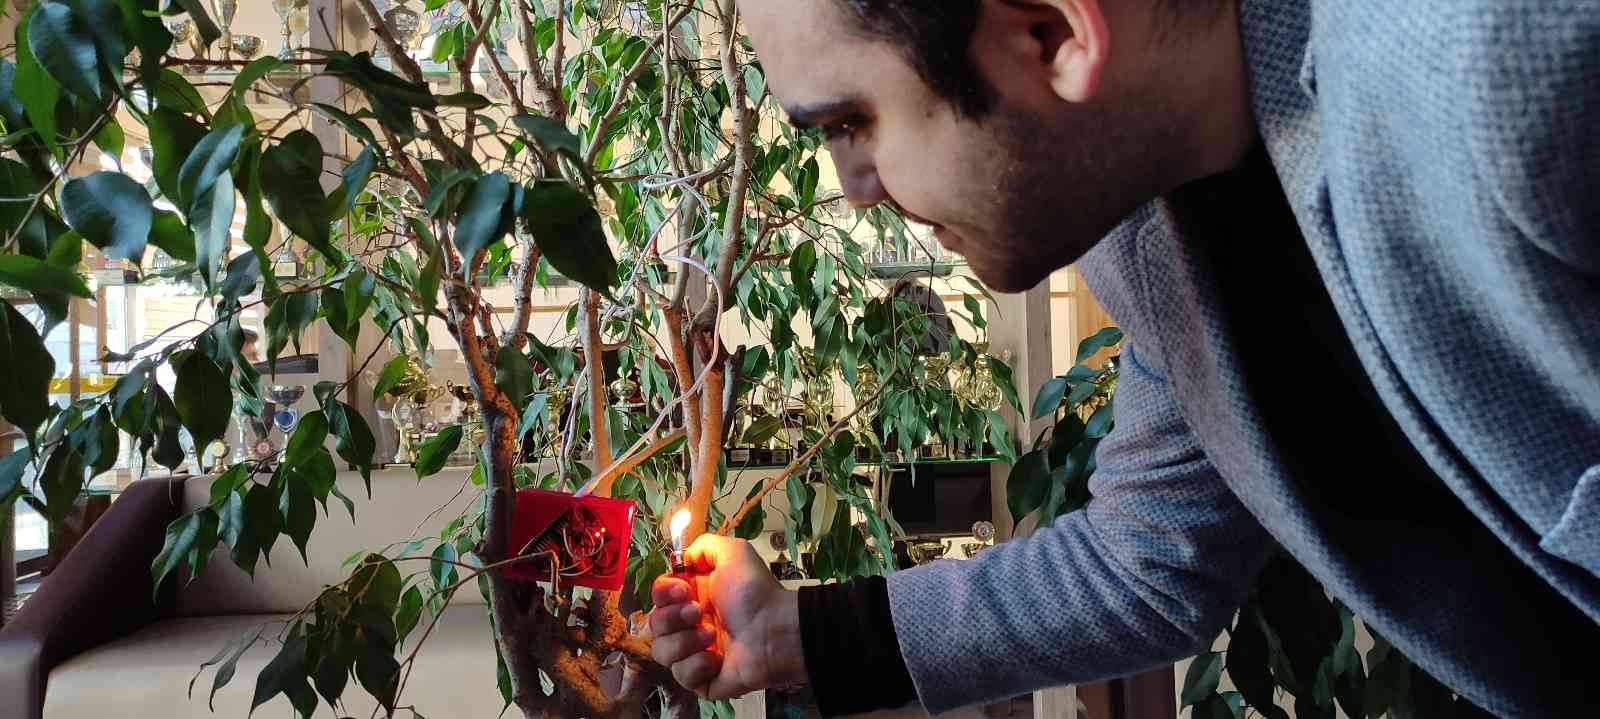 Orta okul öğrencileri orman yangınlarını bitirecek cihaz üretti #bursa